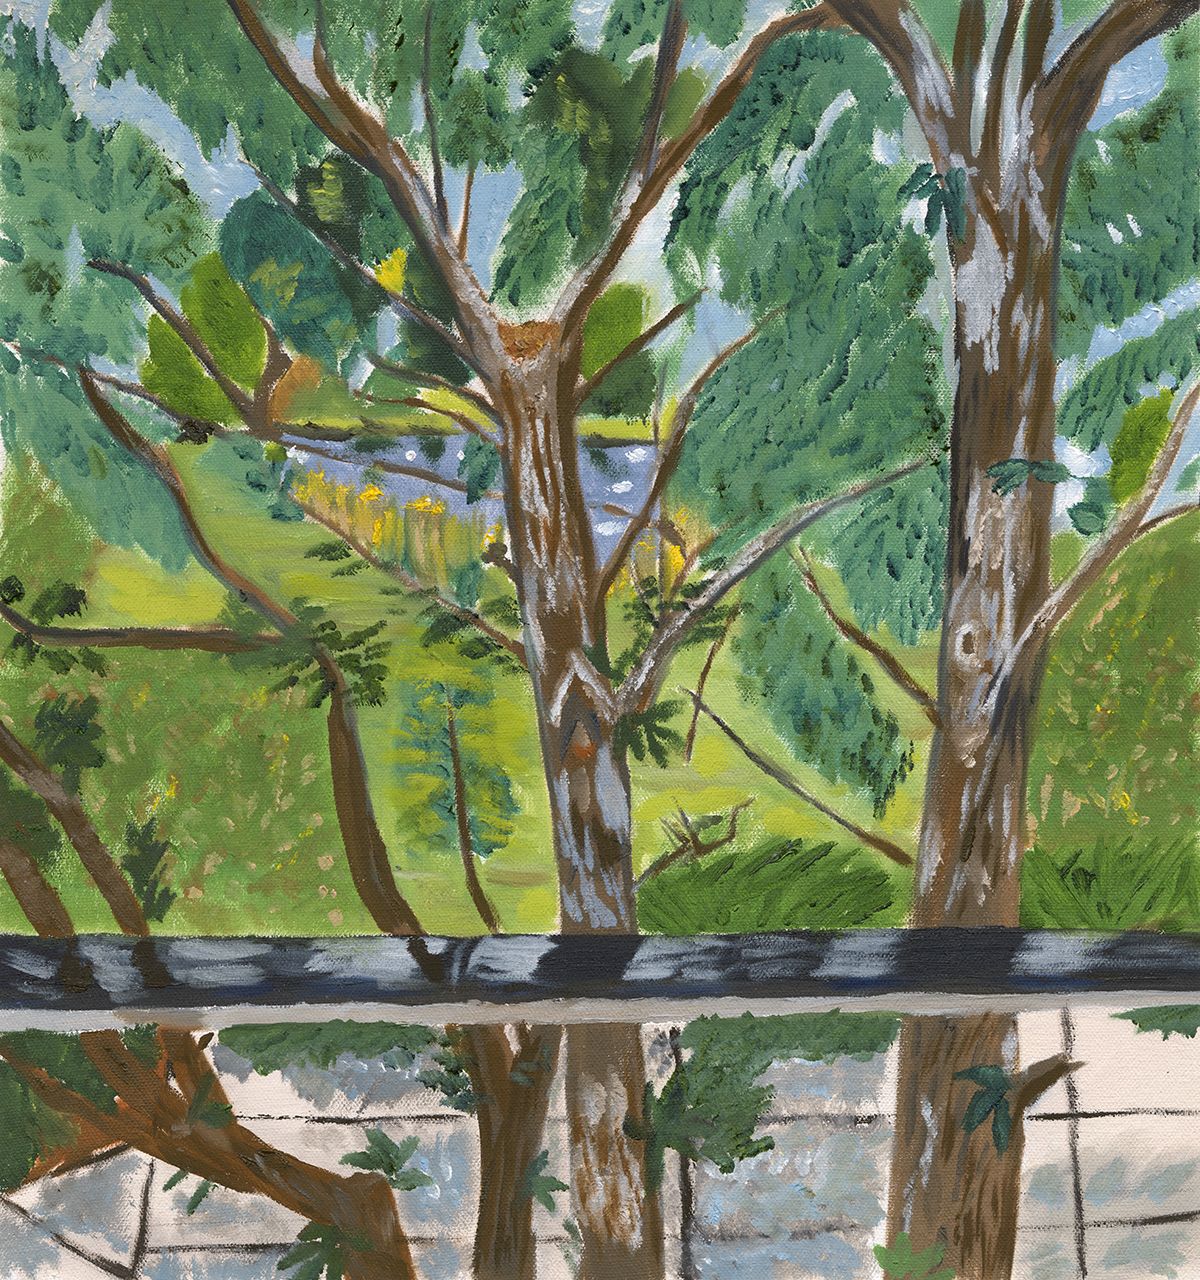 Carlene Lietzow, “Window View”, 2017, Oil on Canvas, 13 ½ x 12 ½ in.